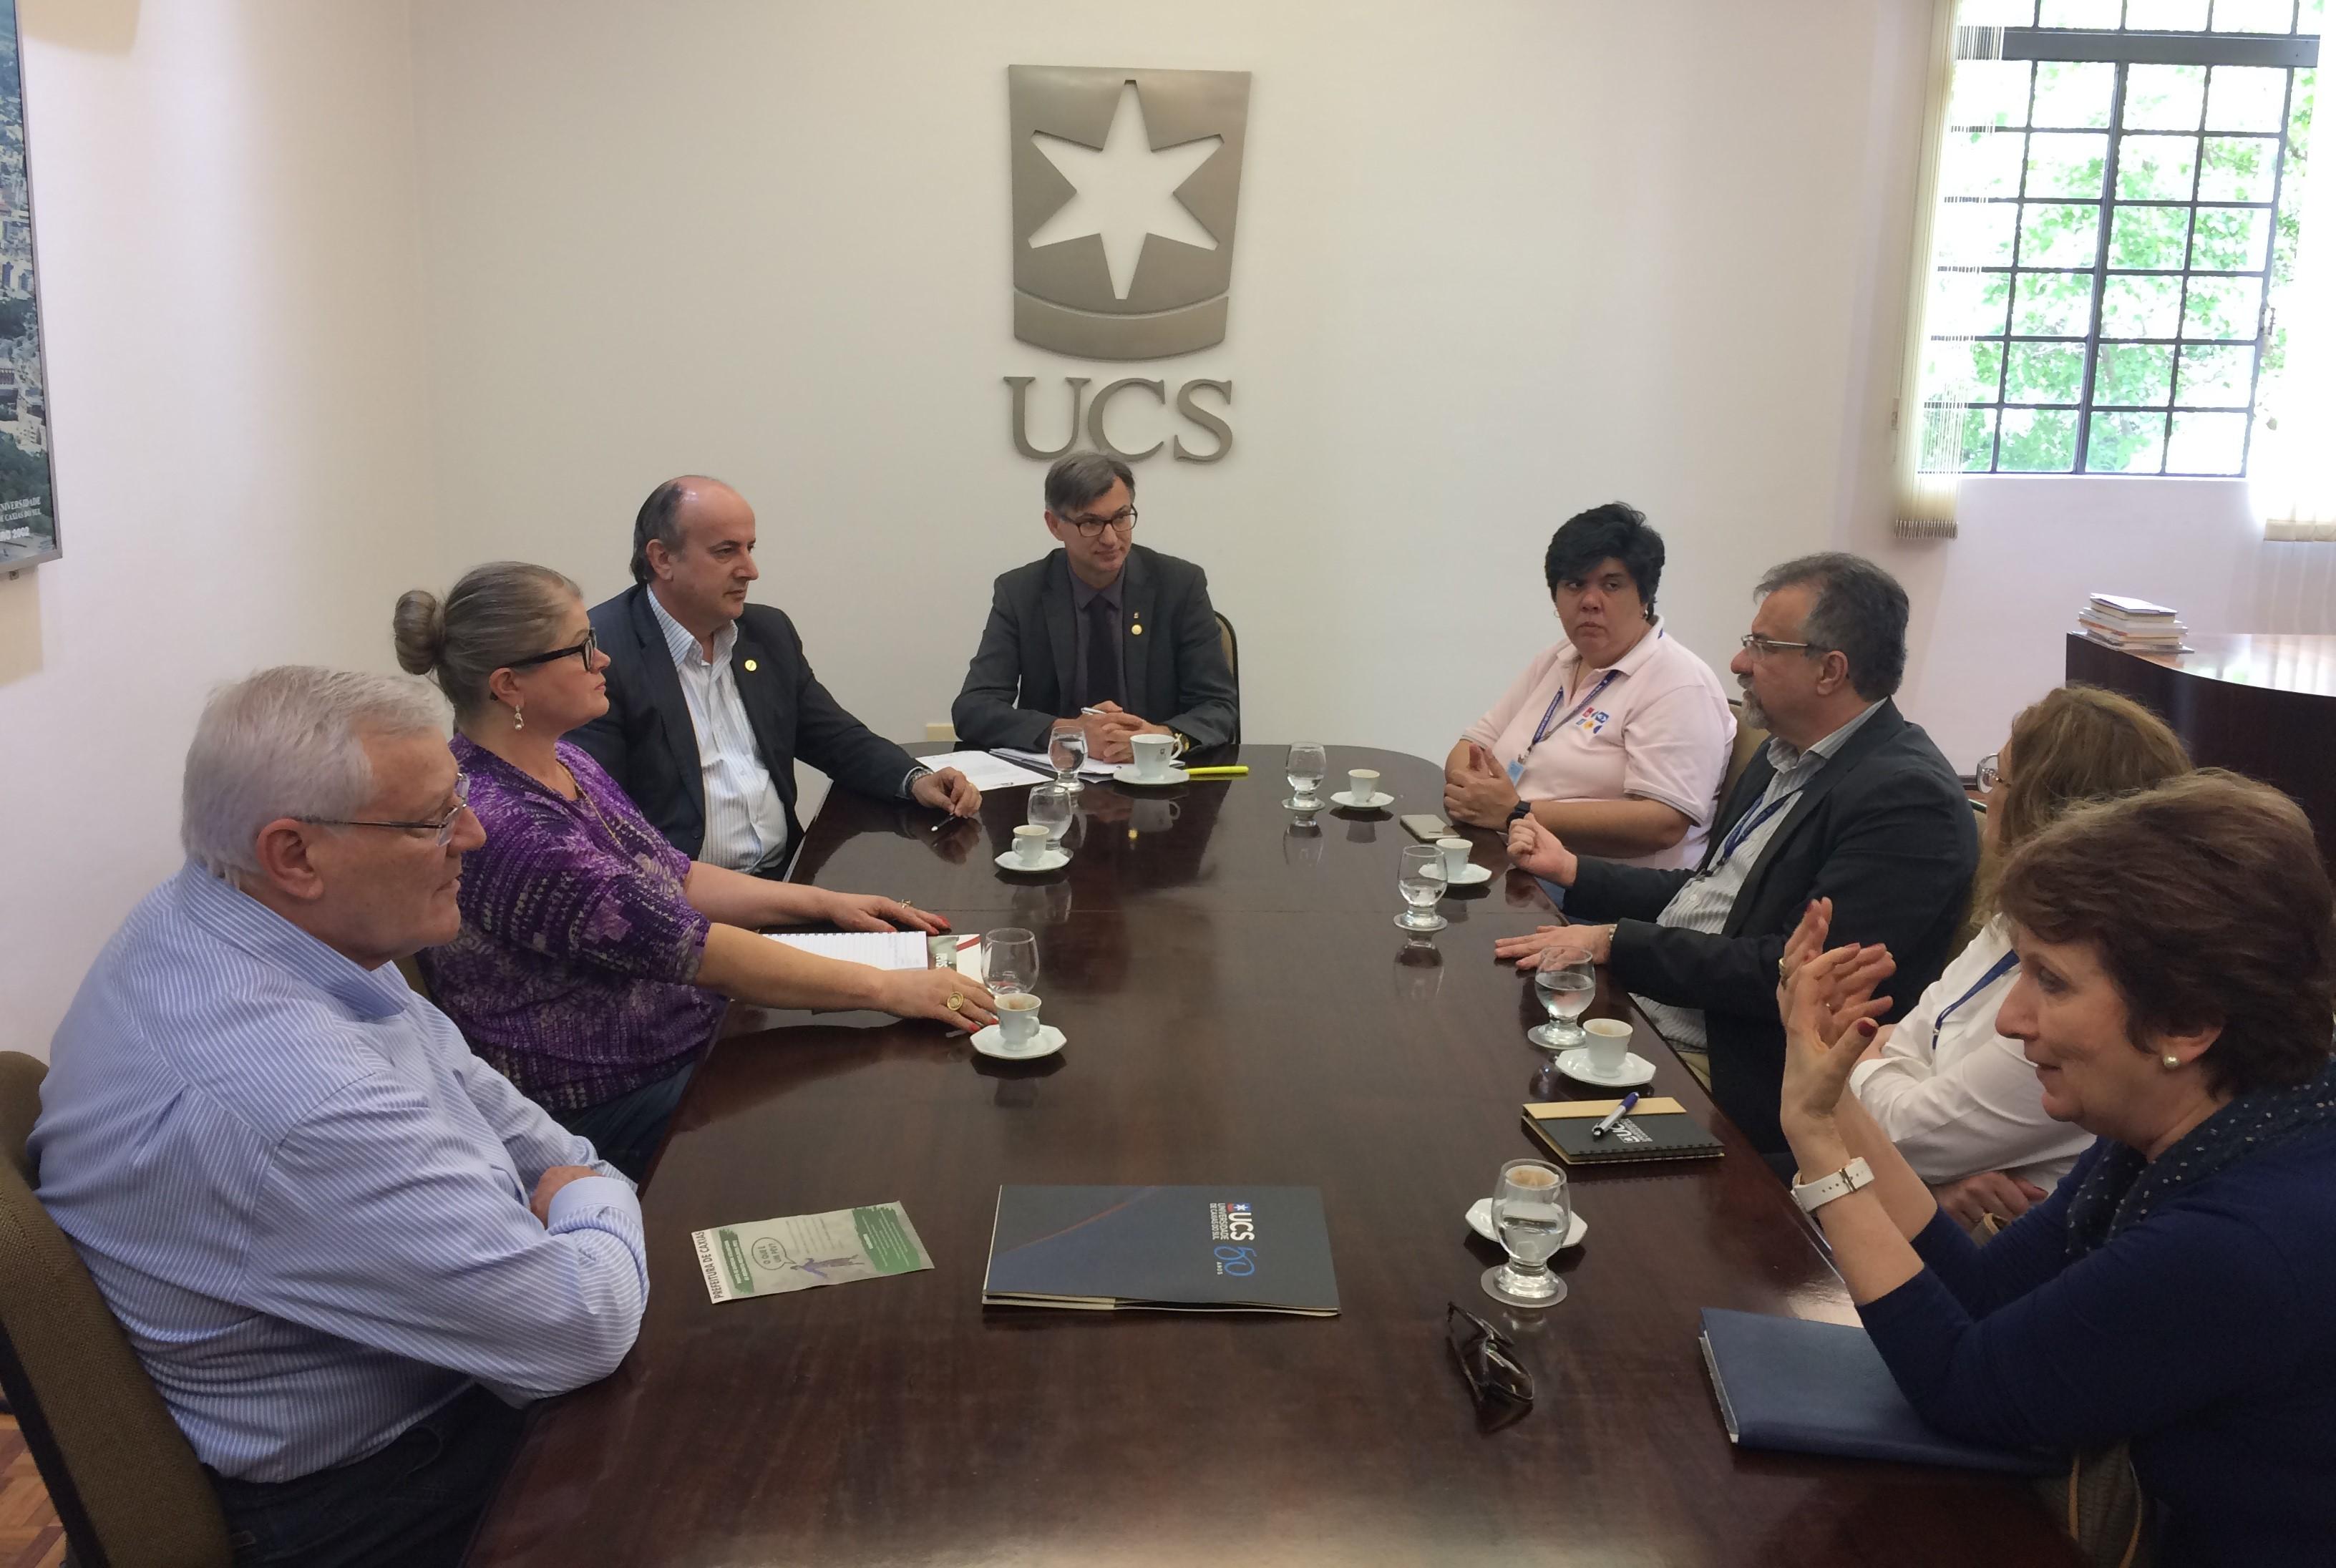  Toigo participa de reunião com reitor da UCS em busca de parcerias para o Turismo Industrial